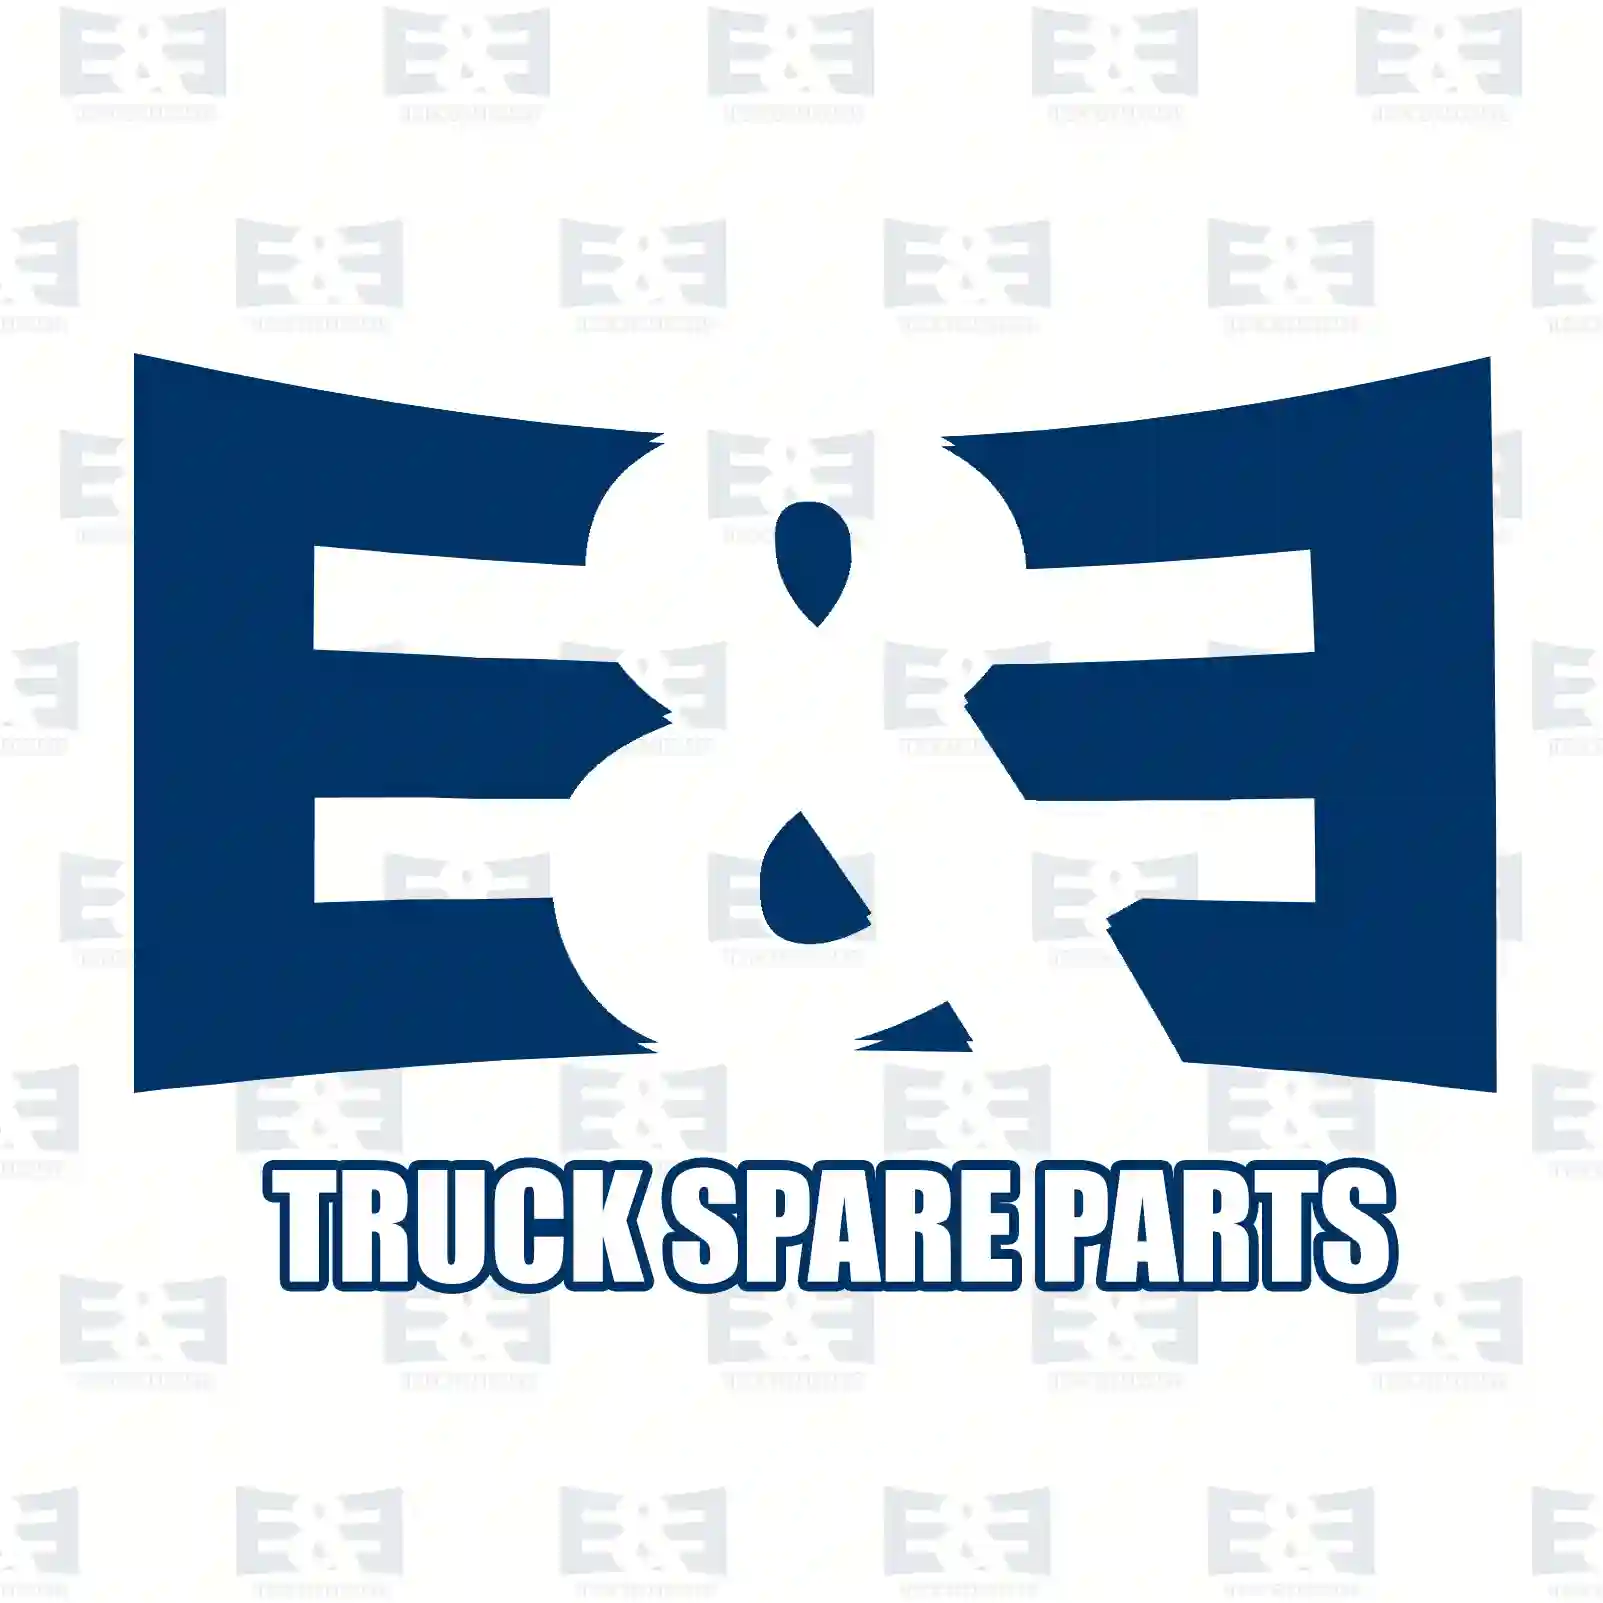 Repair kit, foot brake valve, 2E2295430, 4303006 ||  2E2295430 E&E Truck Spare Parts | Truck Spare Parts, Auotomotive Spare Parts Repair kit, foot brake valve, 2E2295430, 4303006 ||  2E2295430 E&E Truck Spare Parts | Truck Spare Parts, Auotomotive Spare Parts